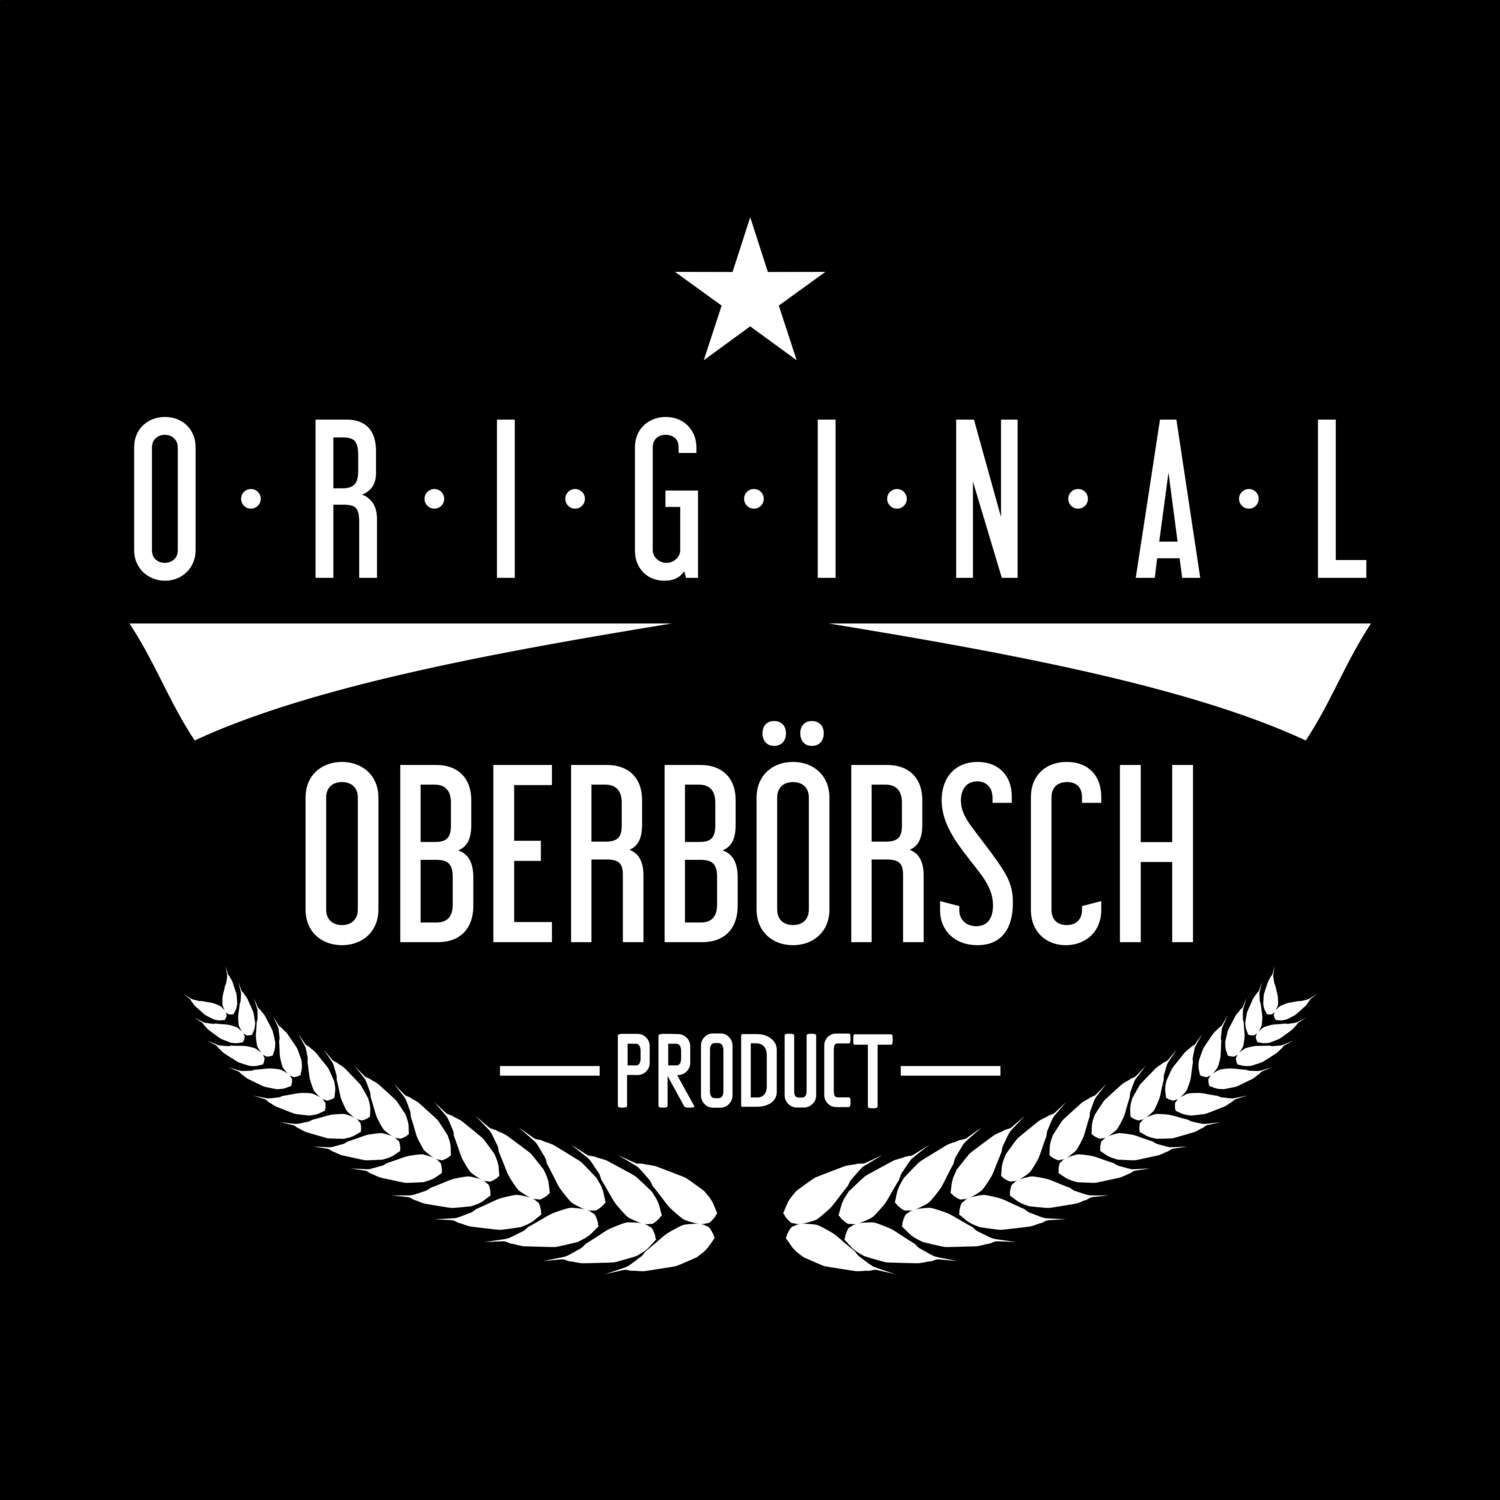 Oberbörsch T-Shirt »Original Product«